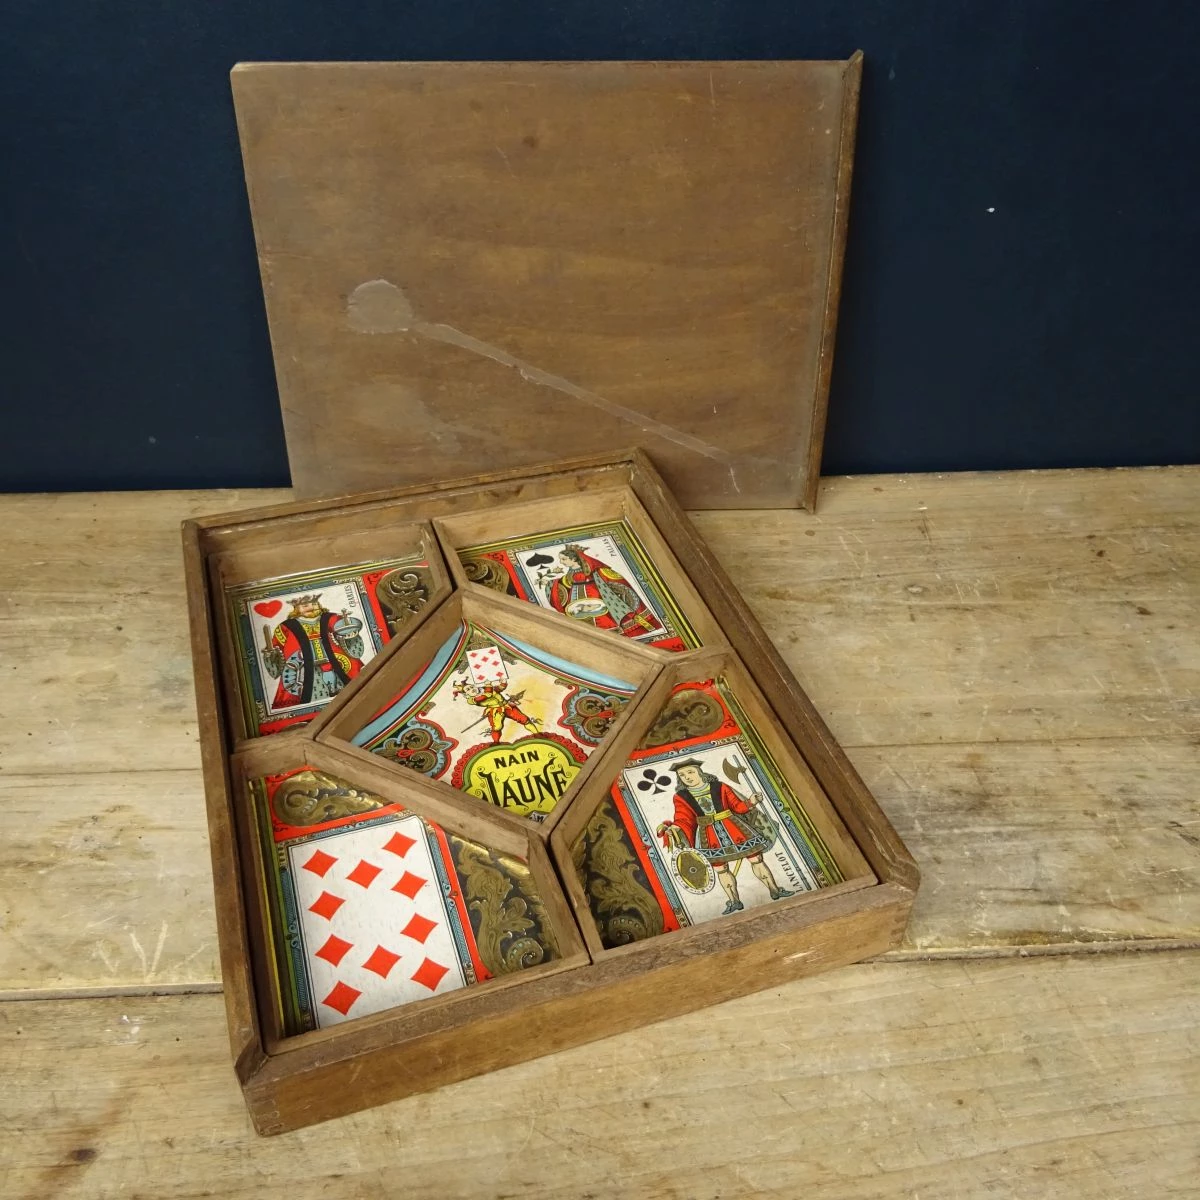 Ancien Jeu de nain jaune en bois, années 50 avec jetons, dé et cartes